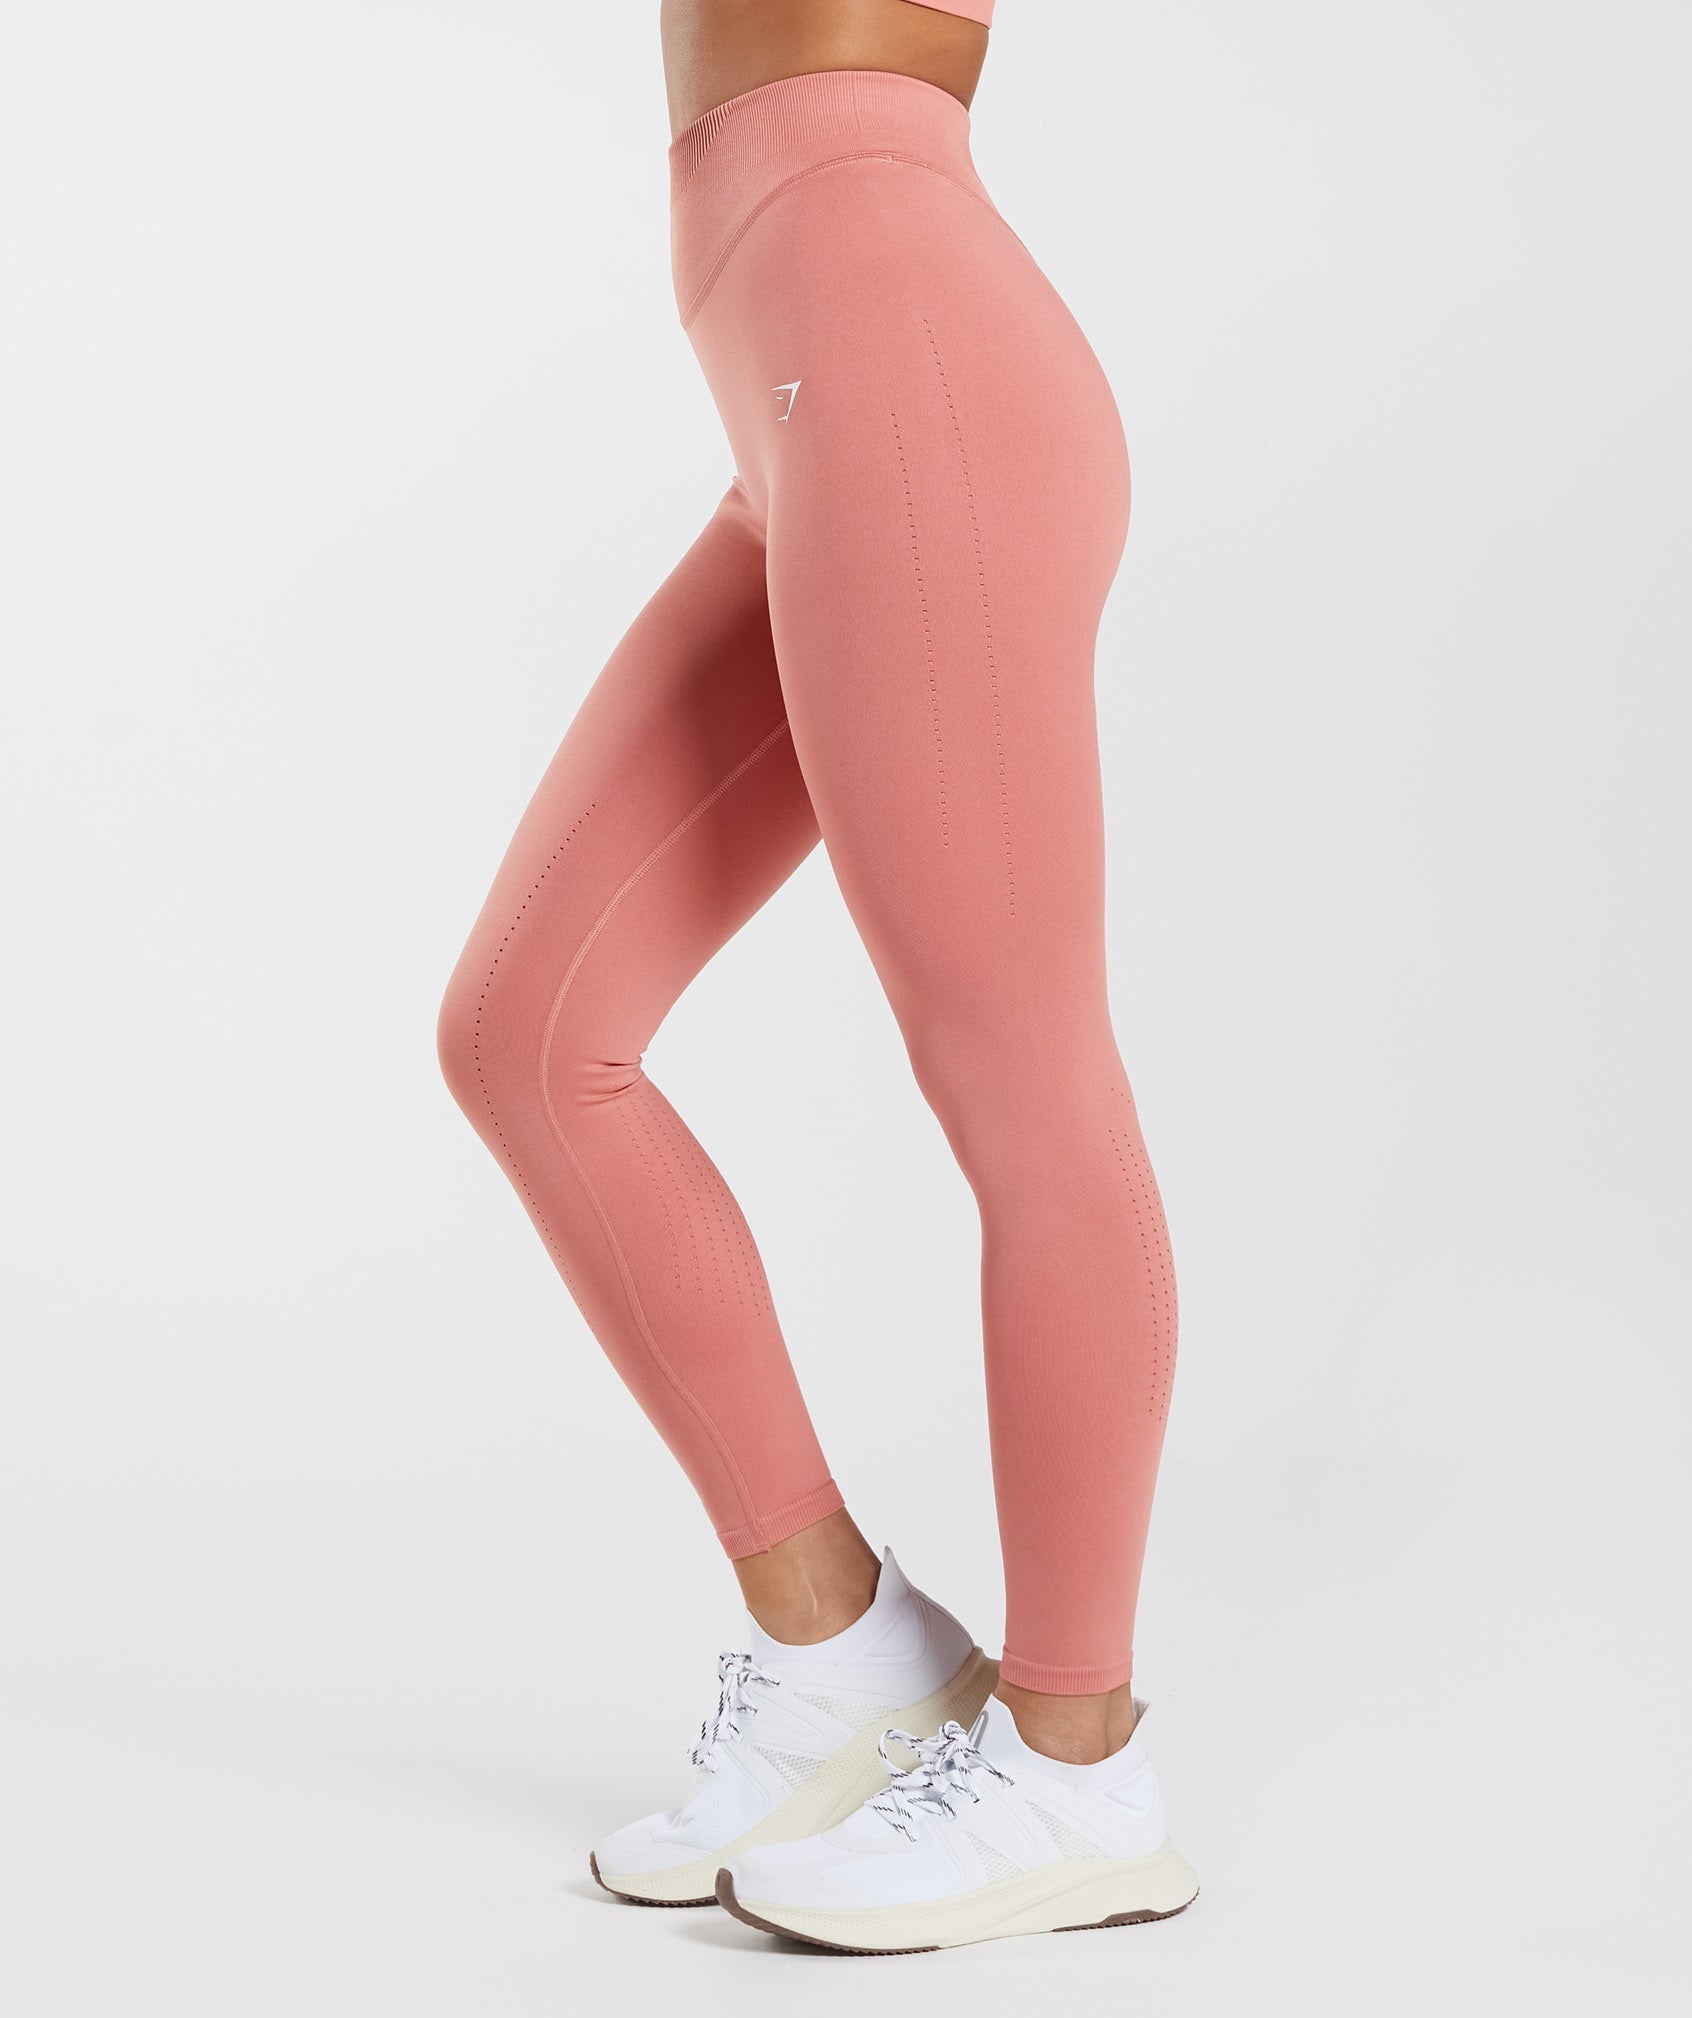 Pink carbon fiber patterned leggings